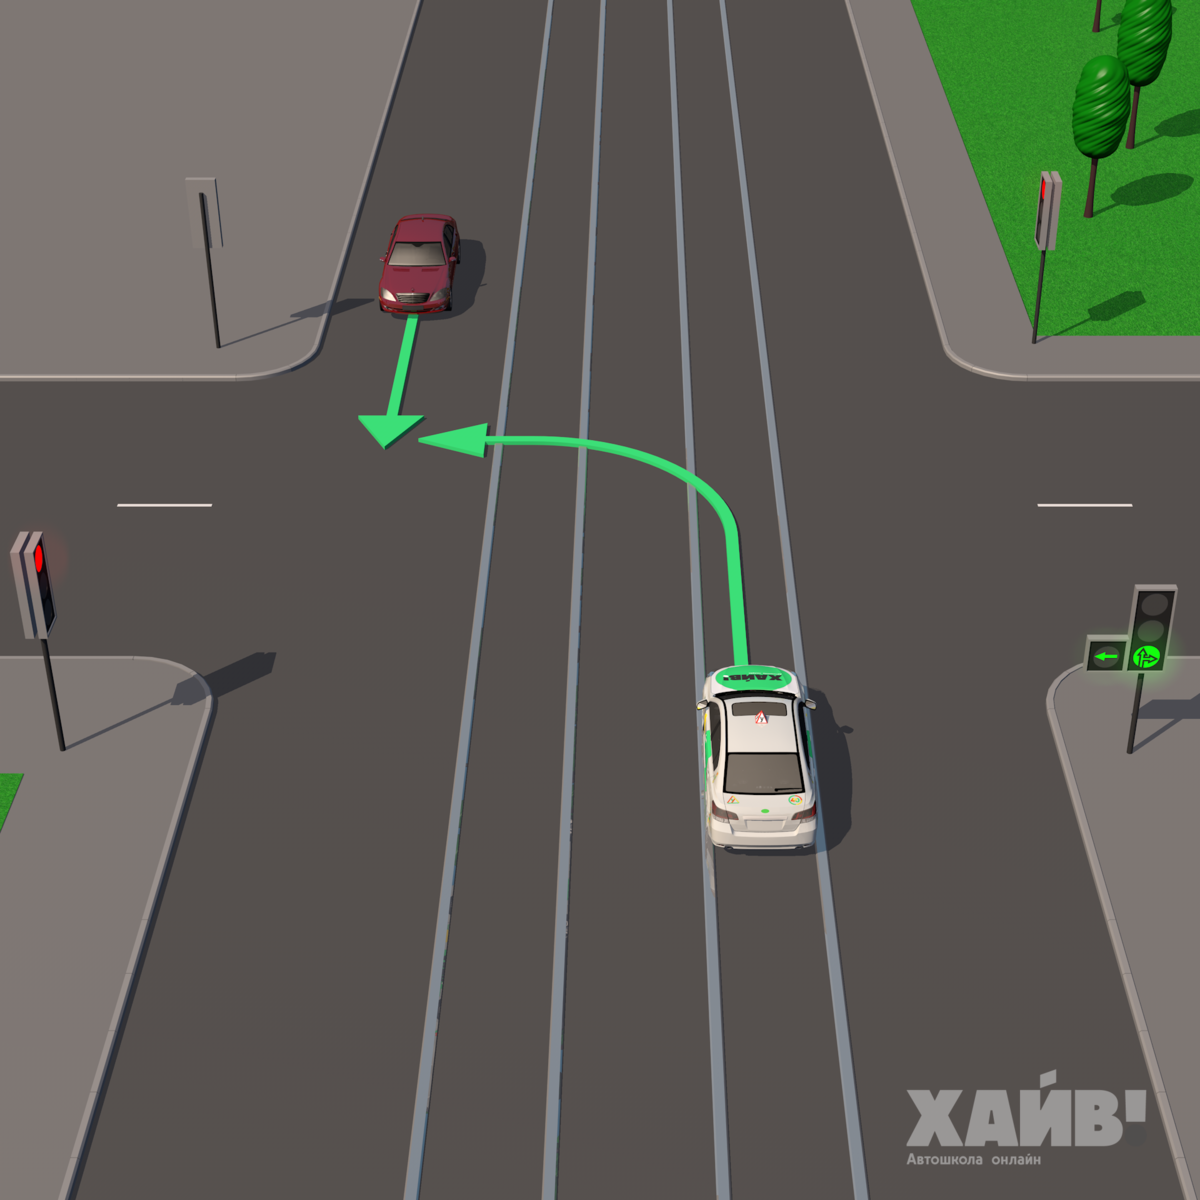 Учебный автомобиль поворачивает налево под зеленую стрелку. Красный едет прямо.  Кто должен уступить в данной ситуации? Пиши свою версию в комментариях. А мы разберем эту задачу ПДД ниже.